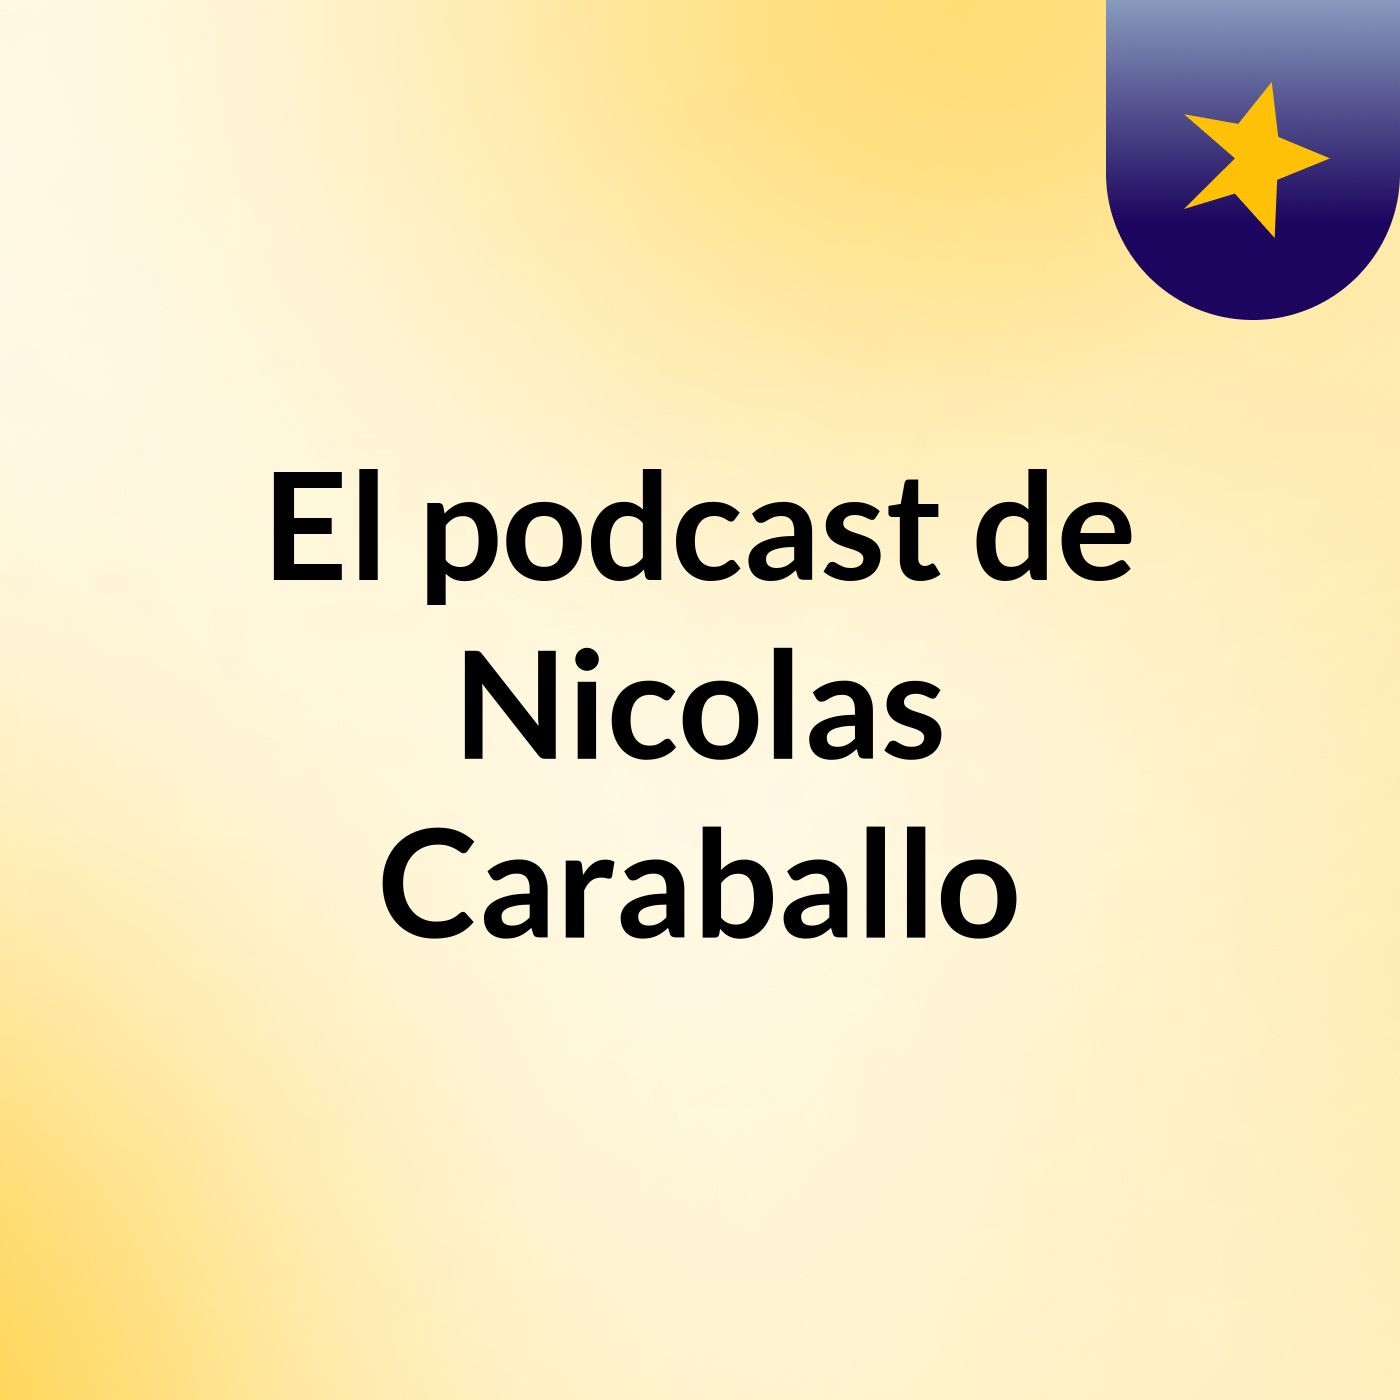 Episodio 4 - El podcast de Nicolas Caraballo